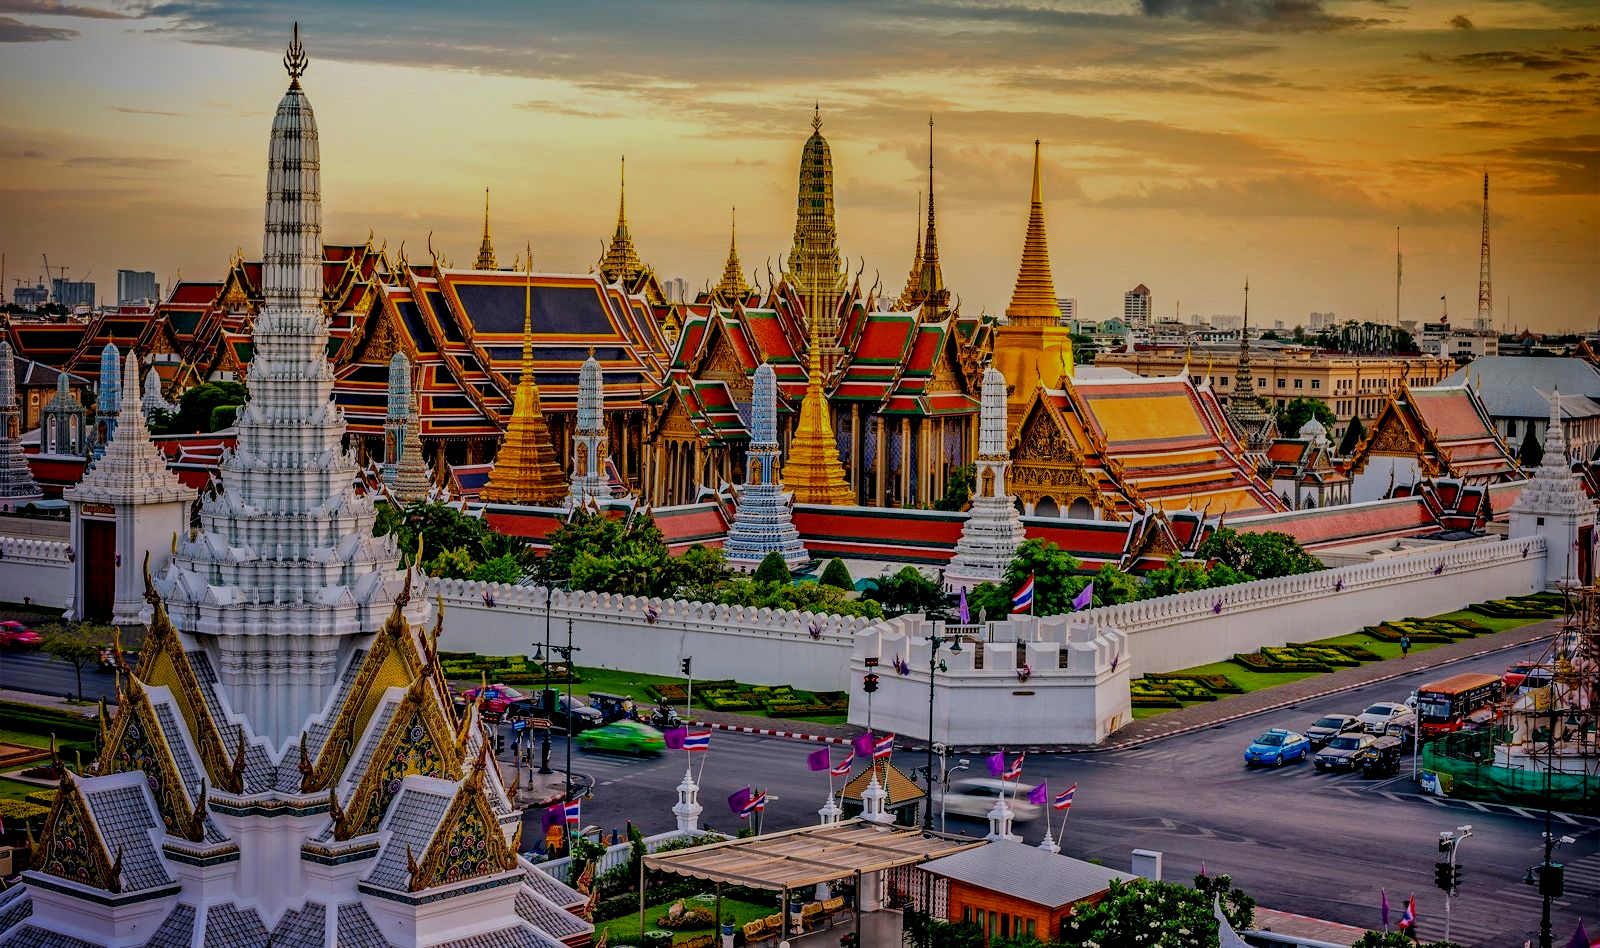 Wat Phra Kaew ( Temple of the Emerald Buddha ) in Bangkok